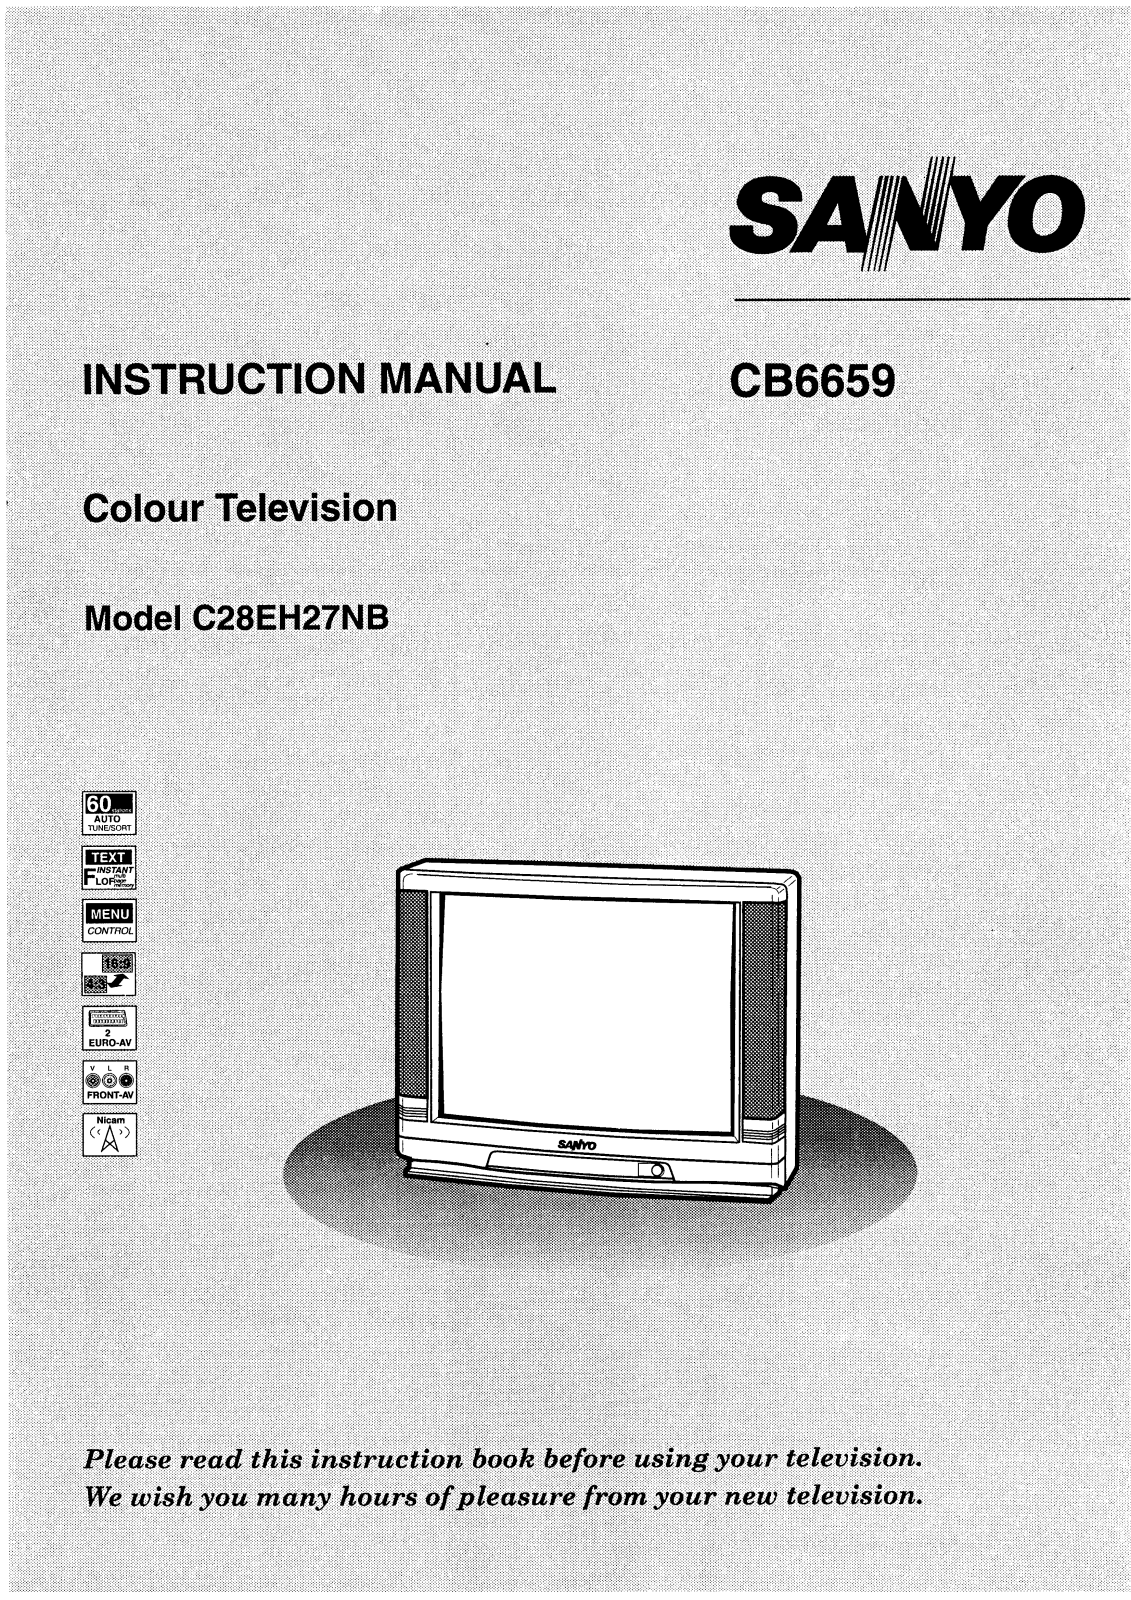 Sanyo CB6659 Instruction Manual